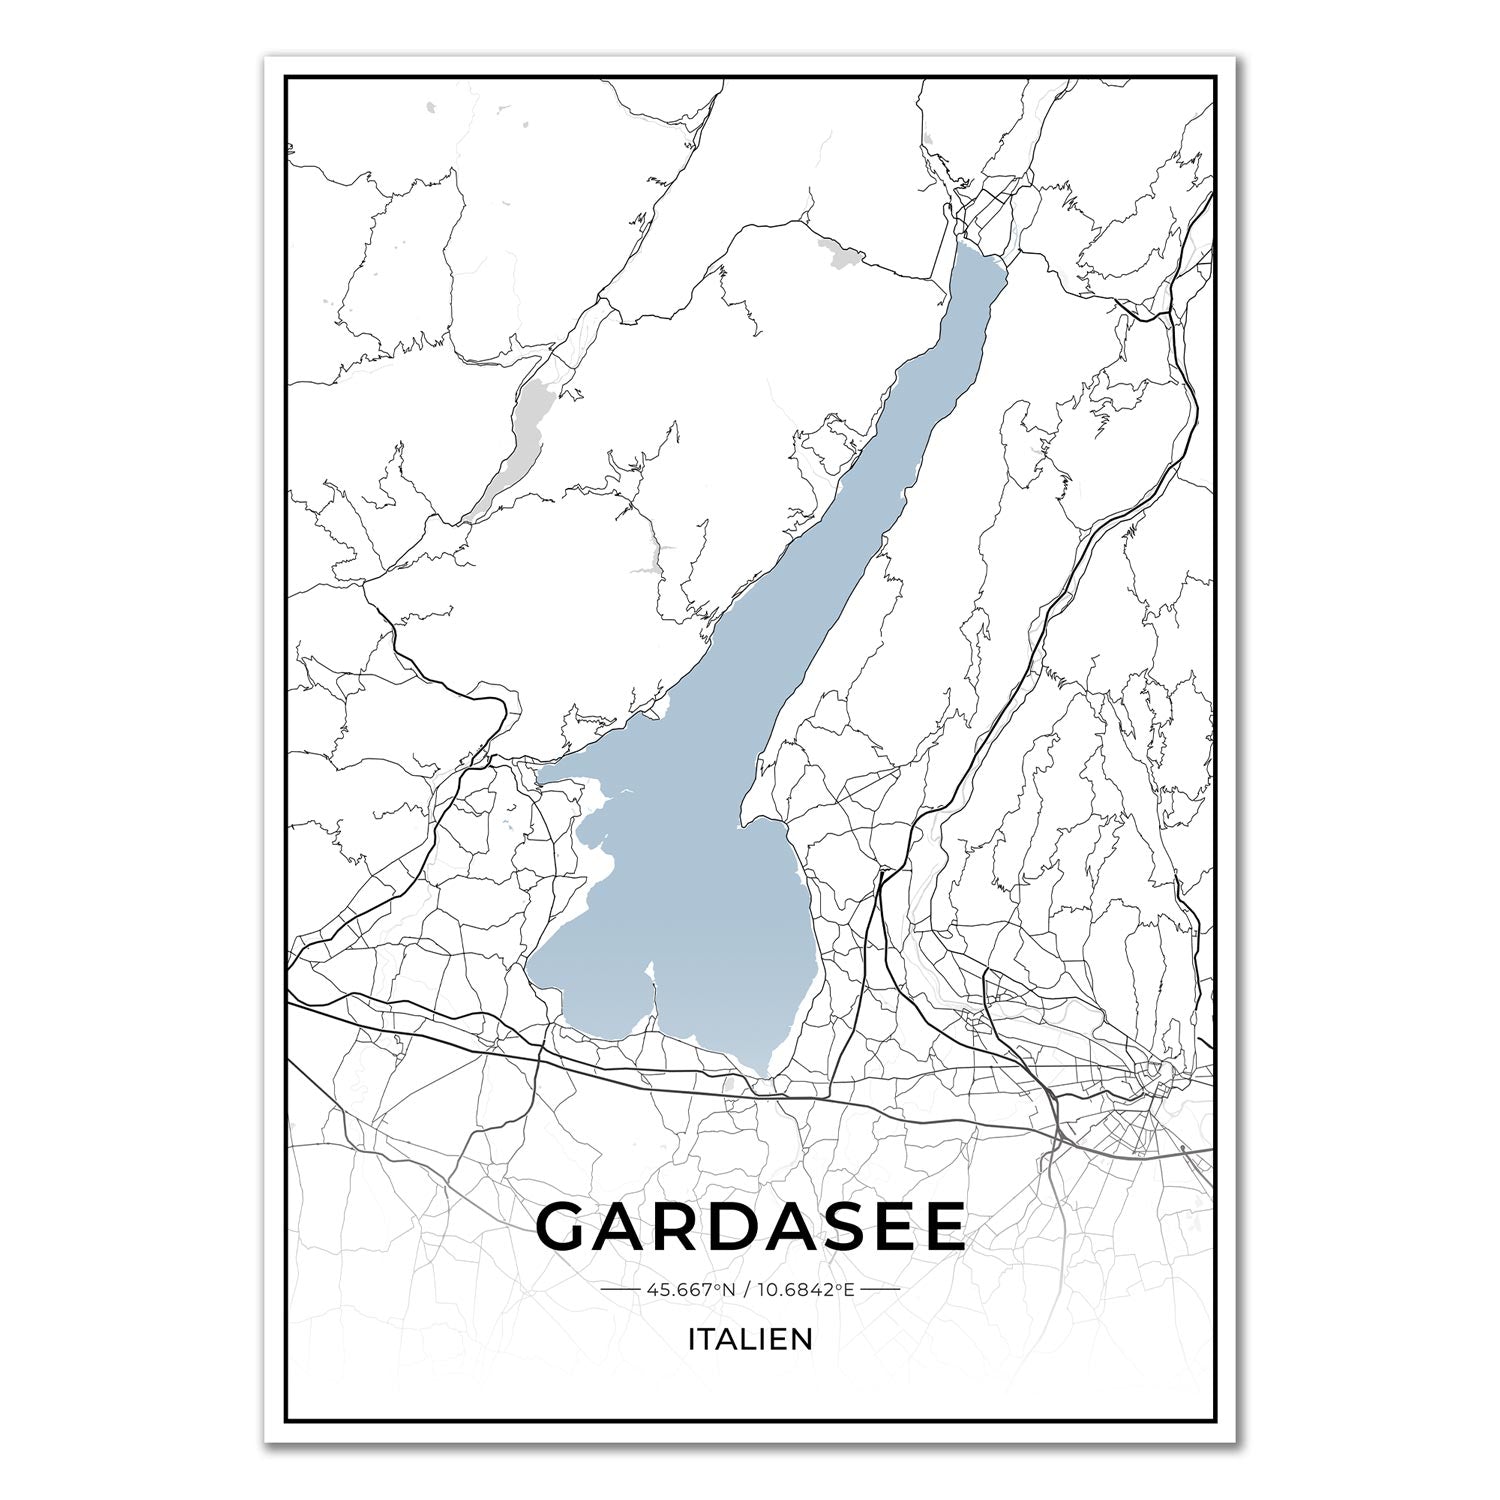 See Karten Poster - Gardasee